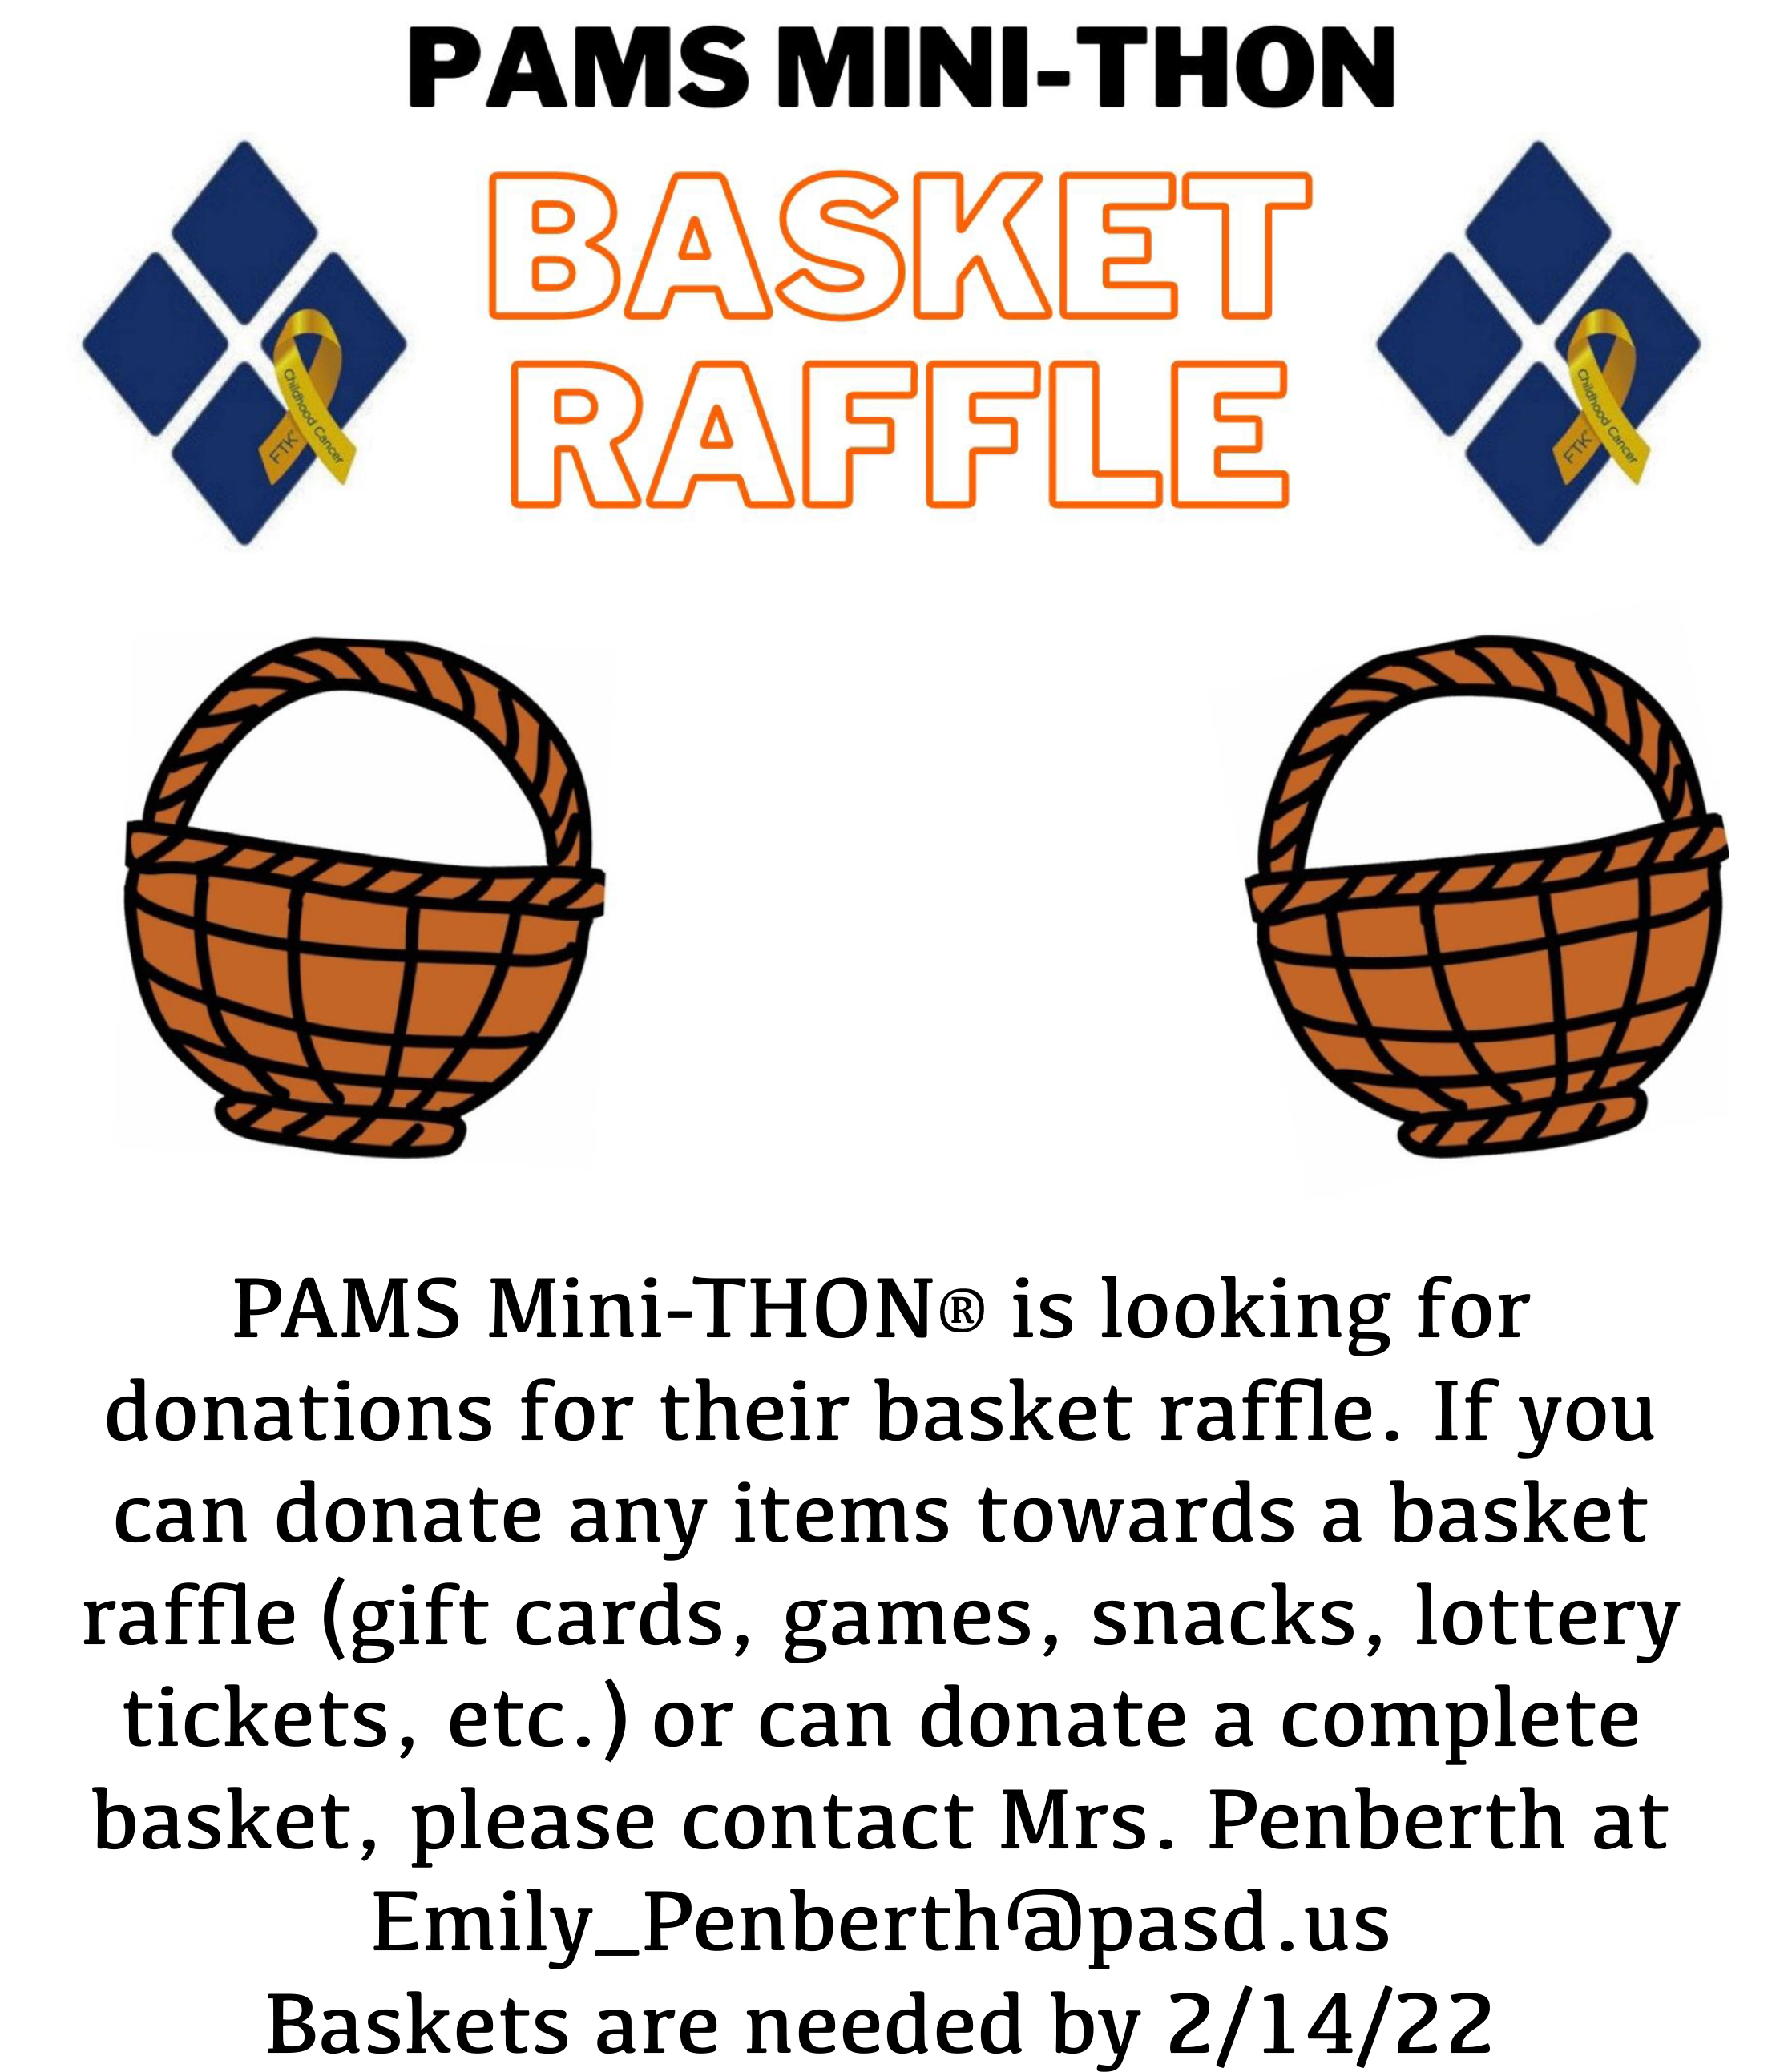 BasketDonationRequest_lge-0001.png